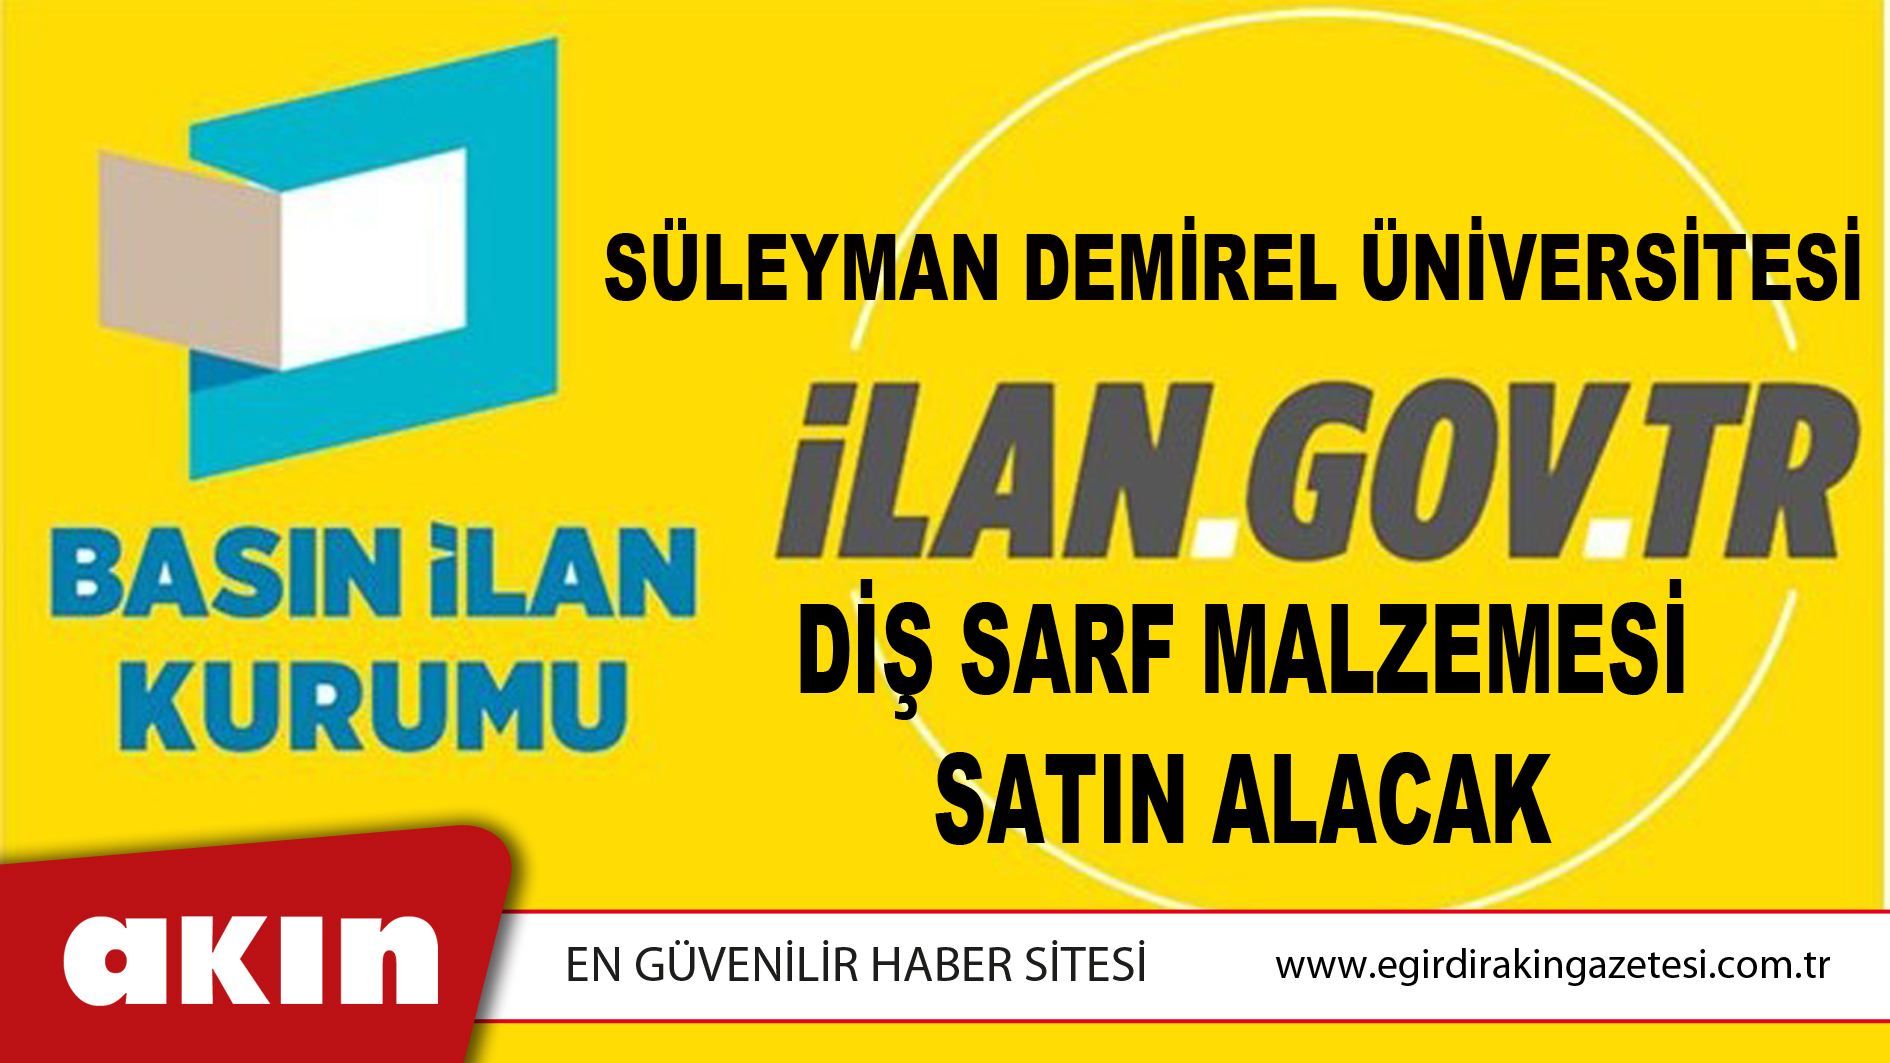 eğirdir haber,akın gazetesi,egirdir haberler,son dakika,Süleyman Demirel Üniversitesi Diş Sarf Malzemesi Satın Alacak